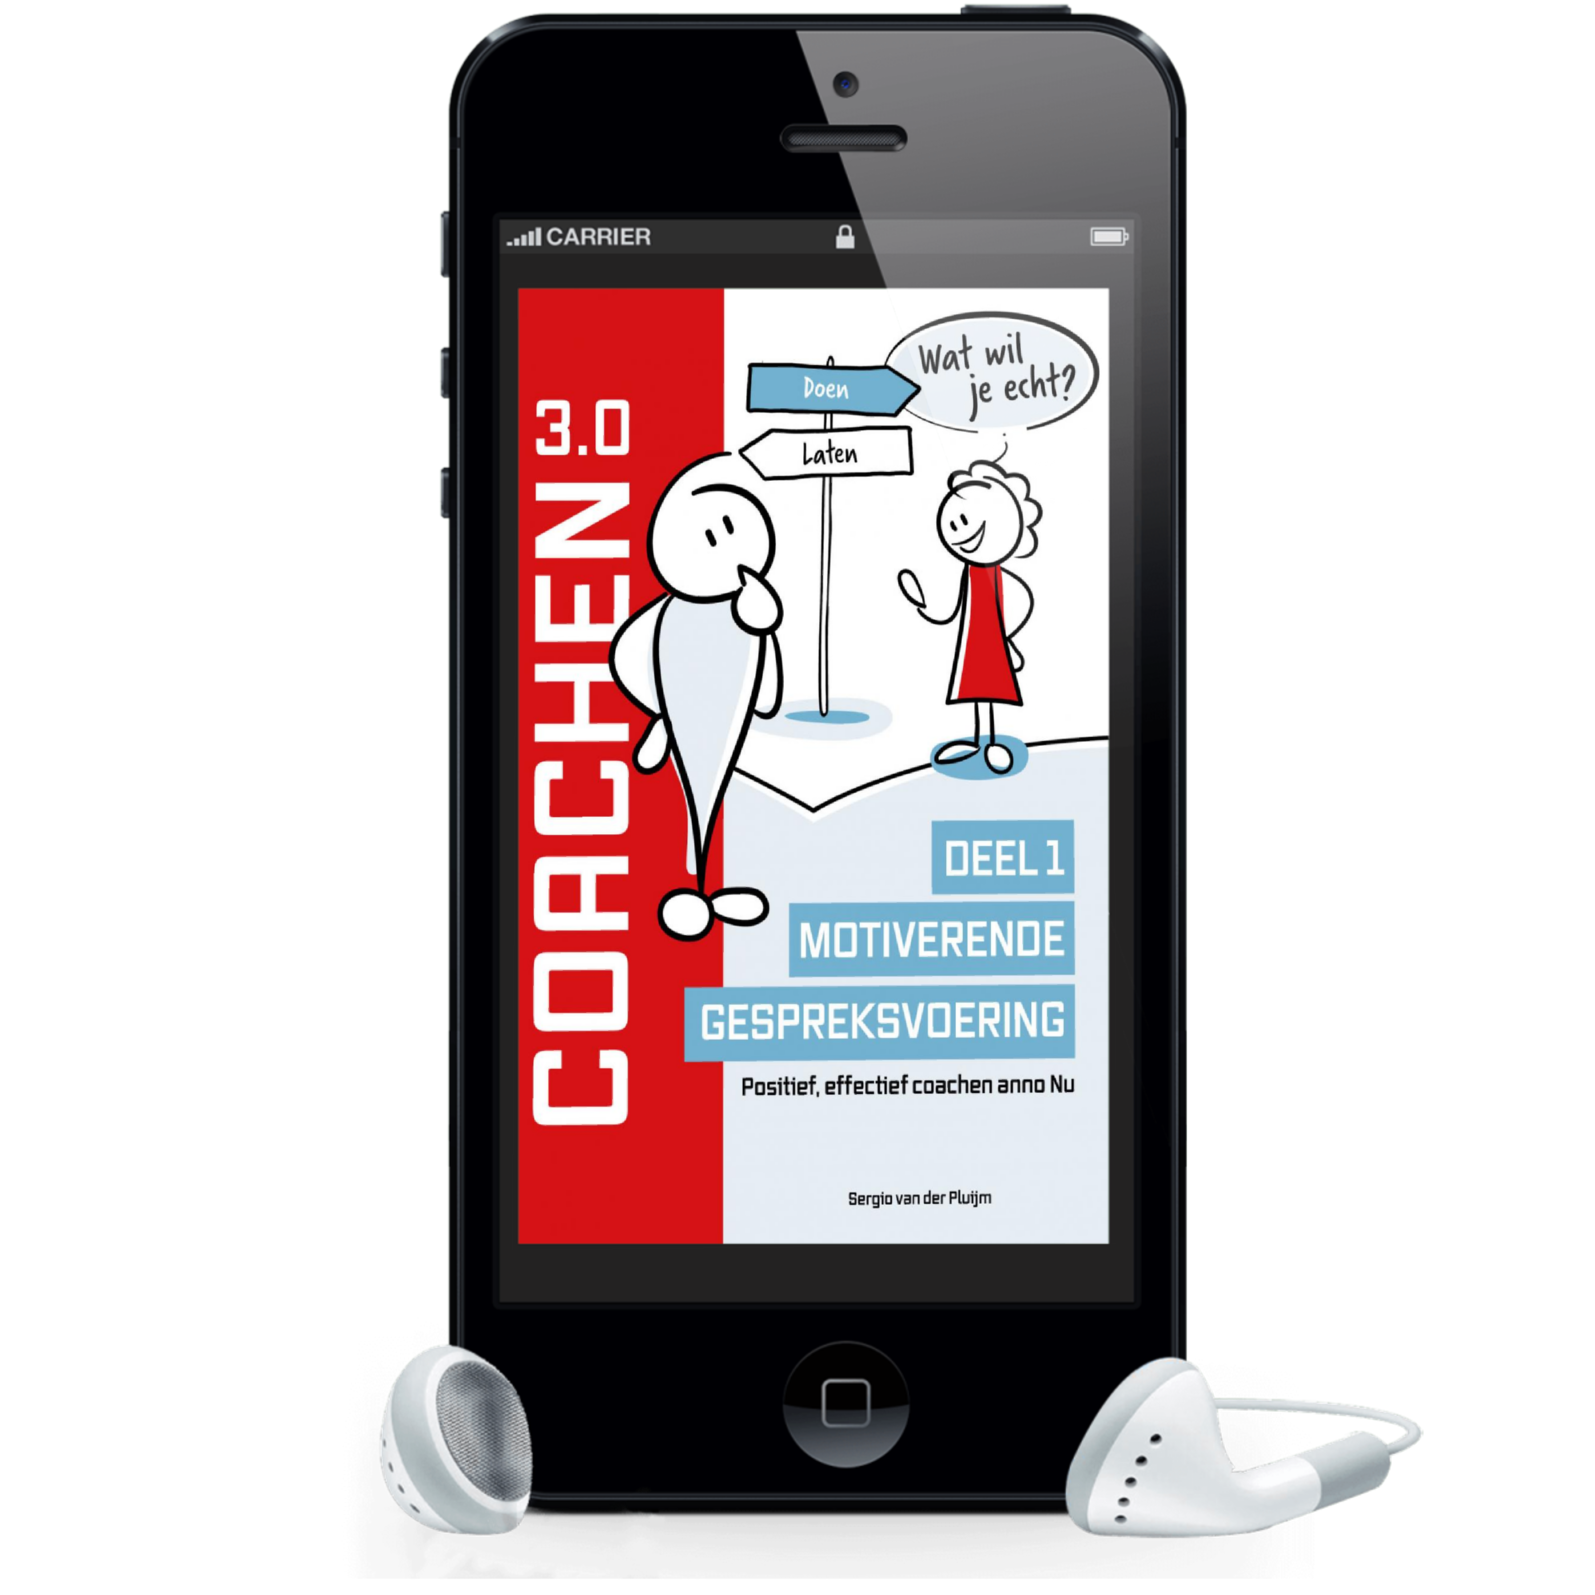 Audioboek Coachen 3.0 - Deel I: Motiverende gespreksvoering